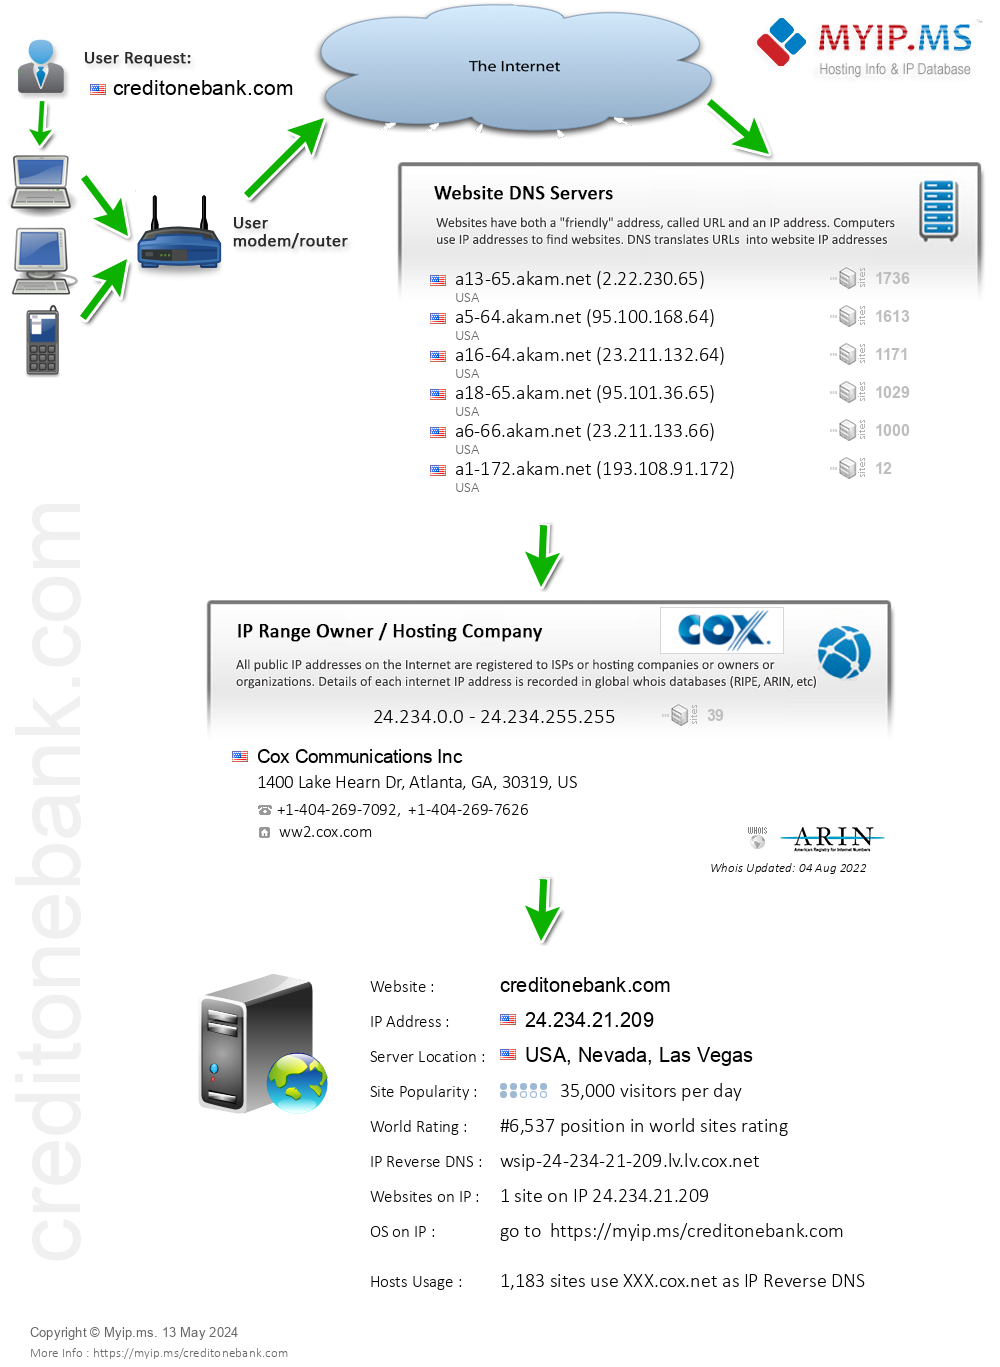 Creditonebank.com - Website Hosting Visual IP Diagram